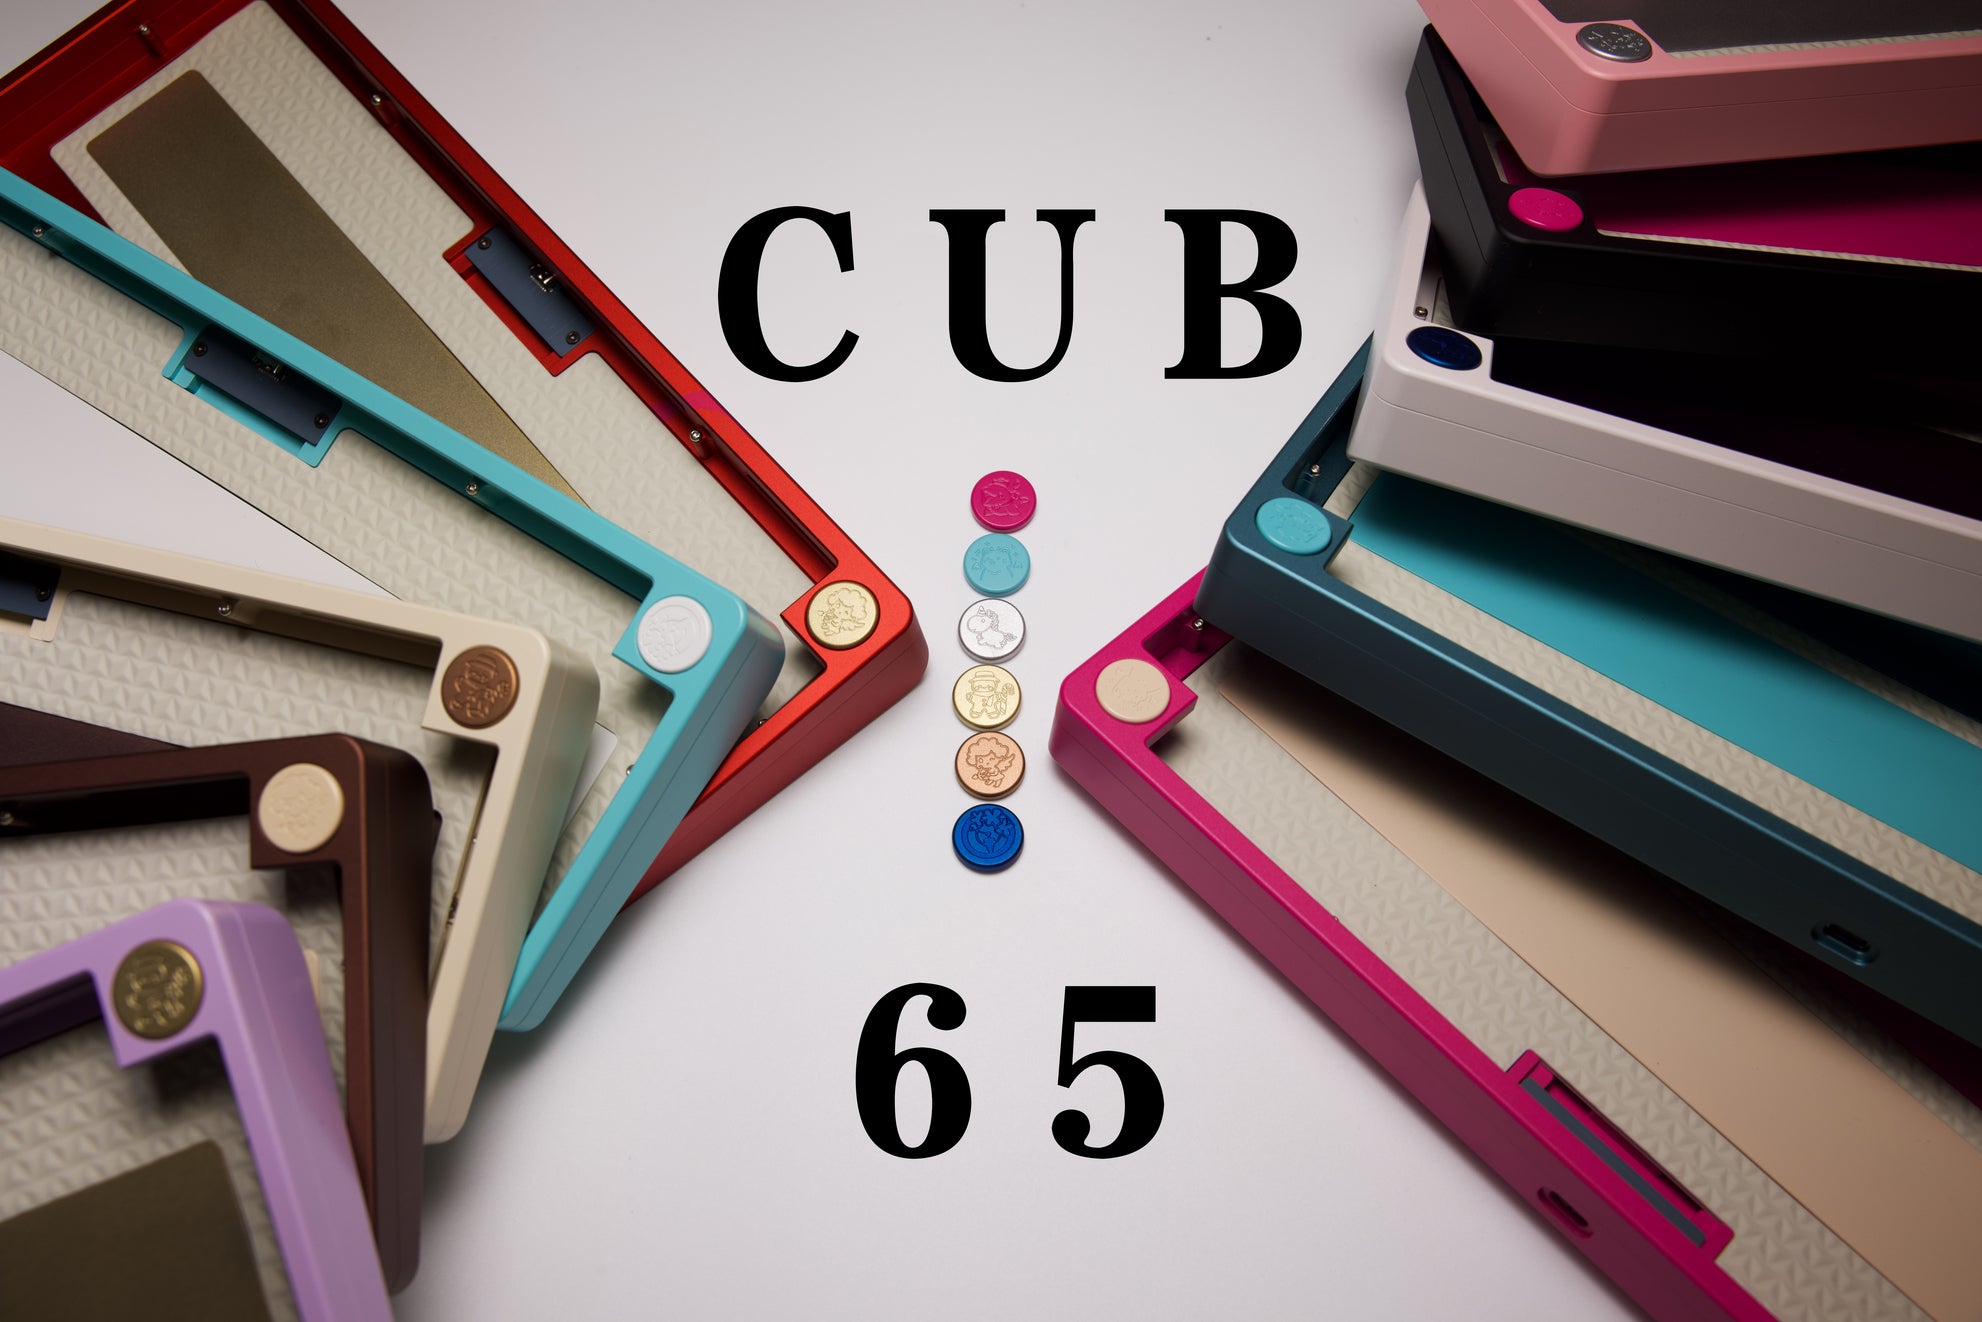 Cub65 Case